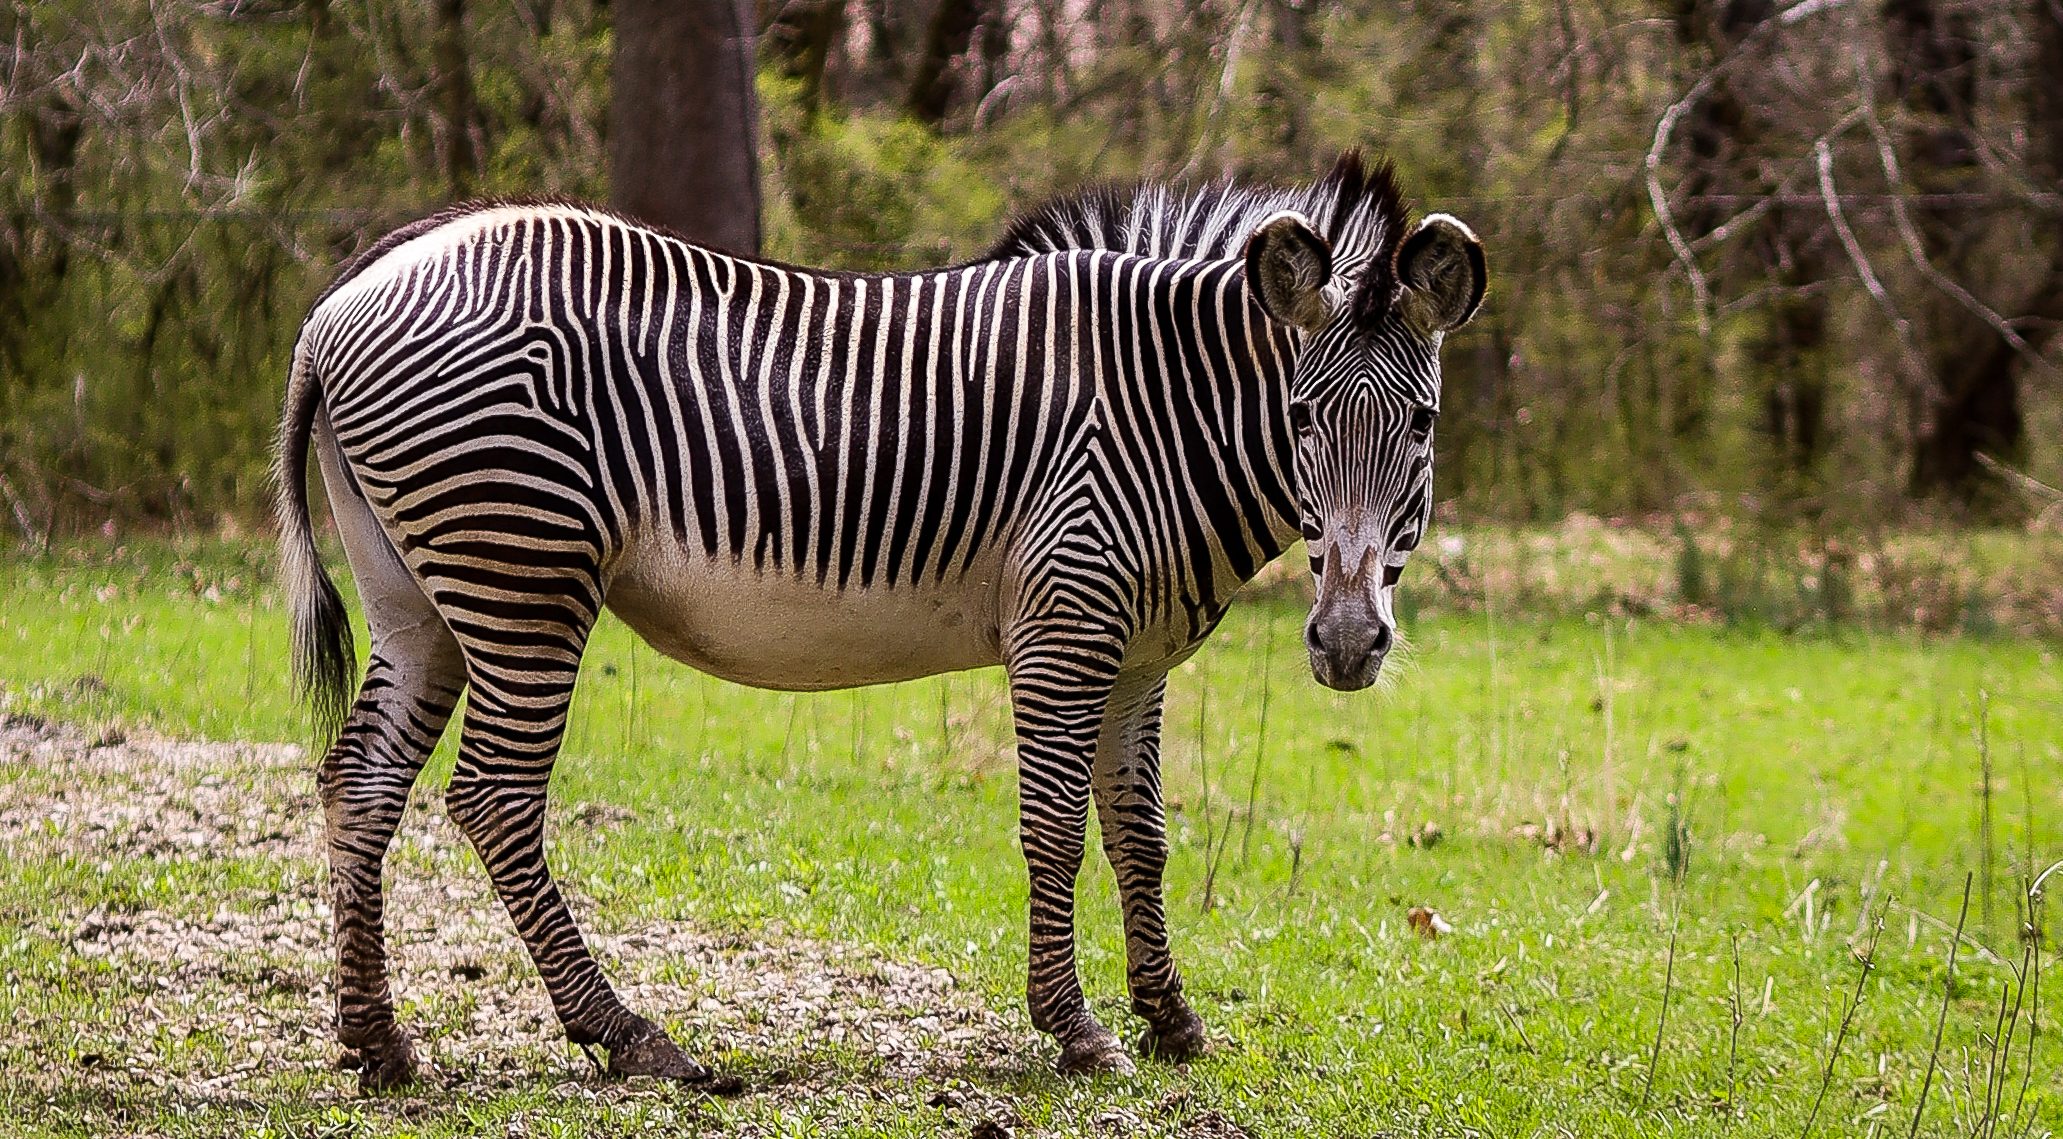 Grevy's Zebras at the Good Zoo at Oglebay Resort : Oglebay